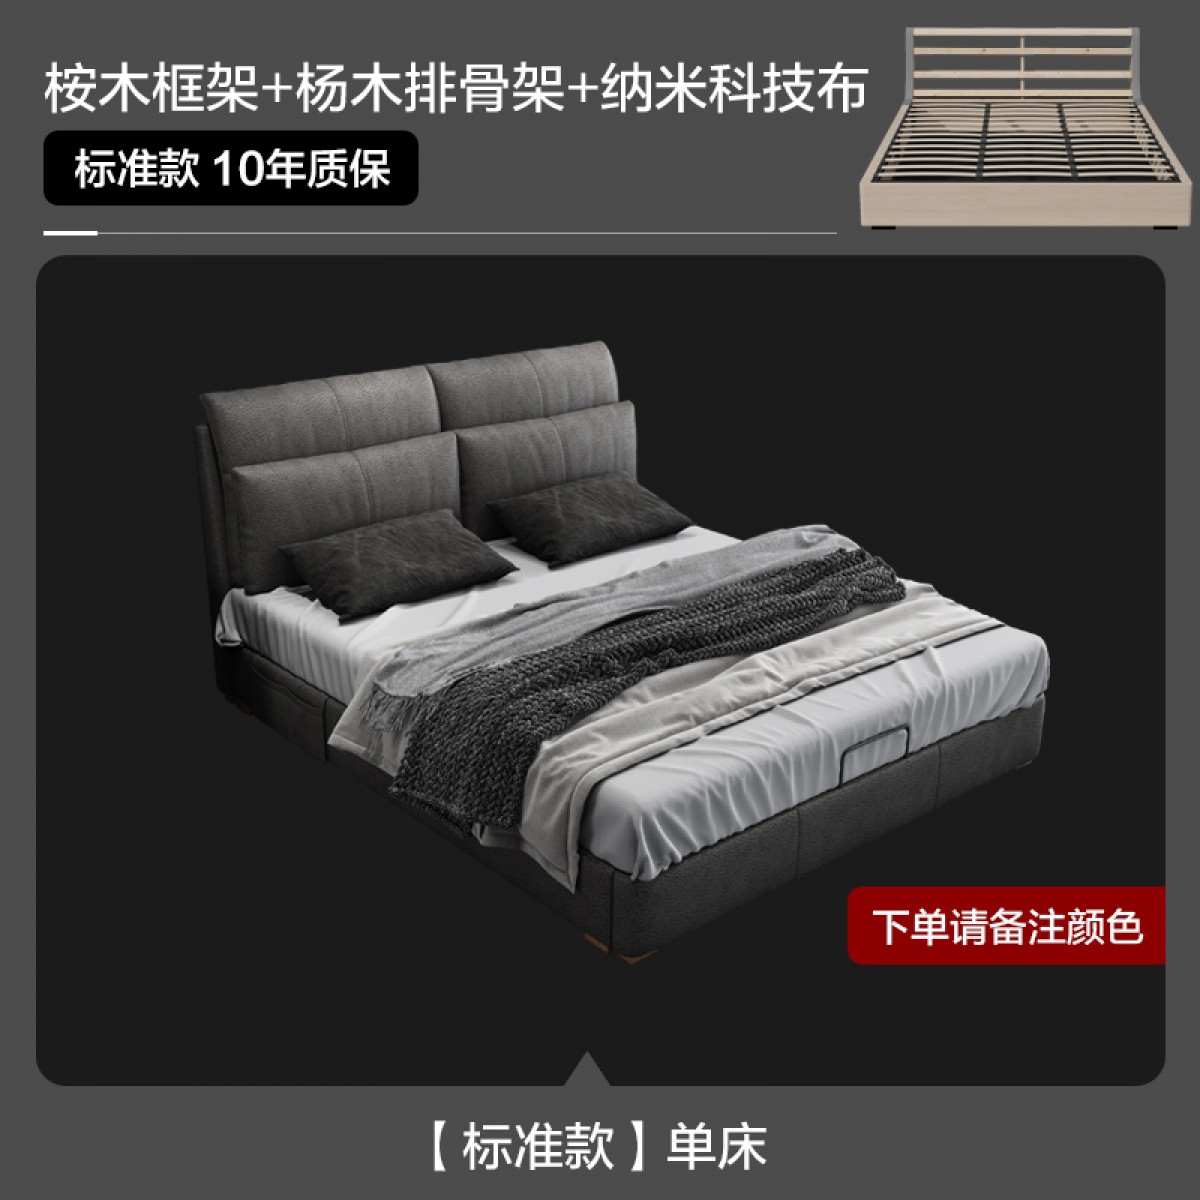 狄普布艺床三防科技布储物婚床双人床1.8m主卧小户型现代简约布床